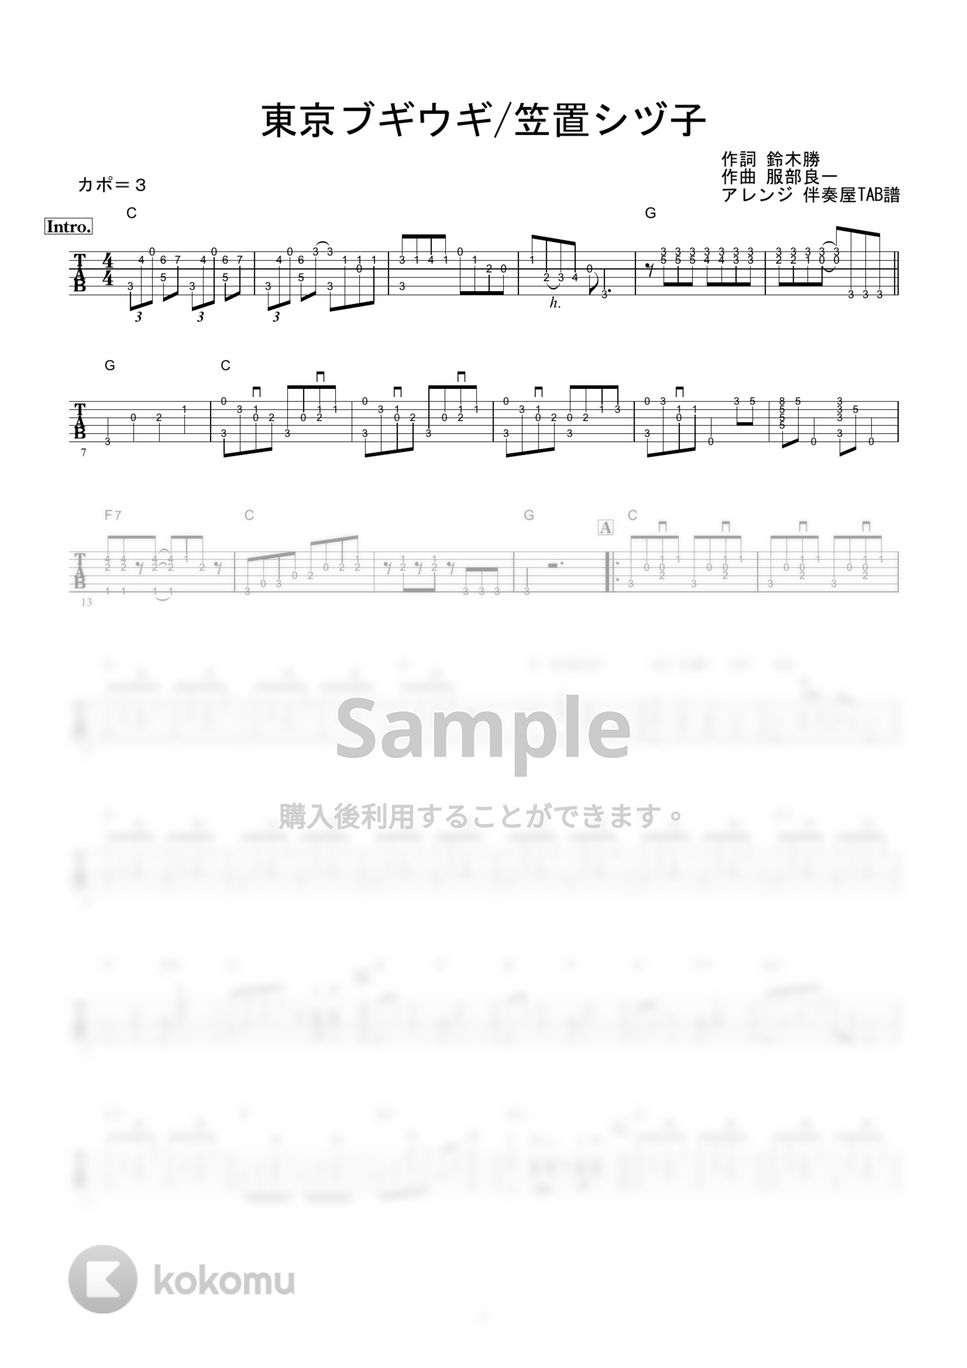 笠置シヅ子 - 東京ブギウギ (ギター伴奏/イントロ・間奏ソロギター) by 伴奏屋TAB譜